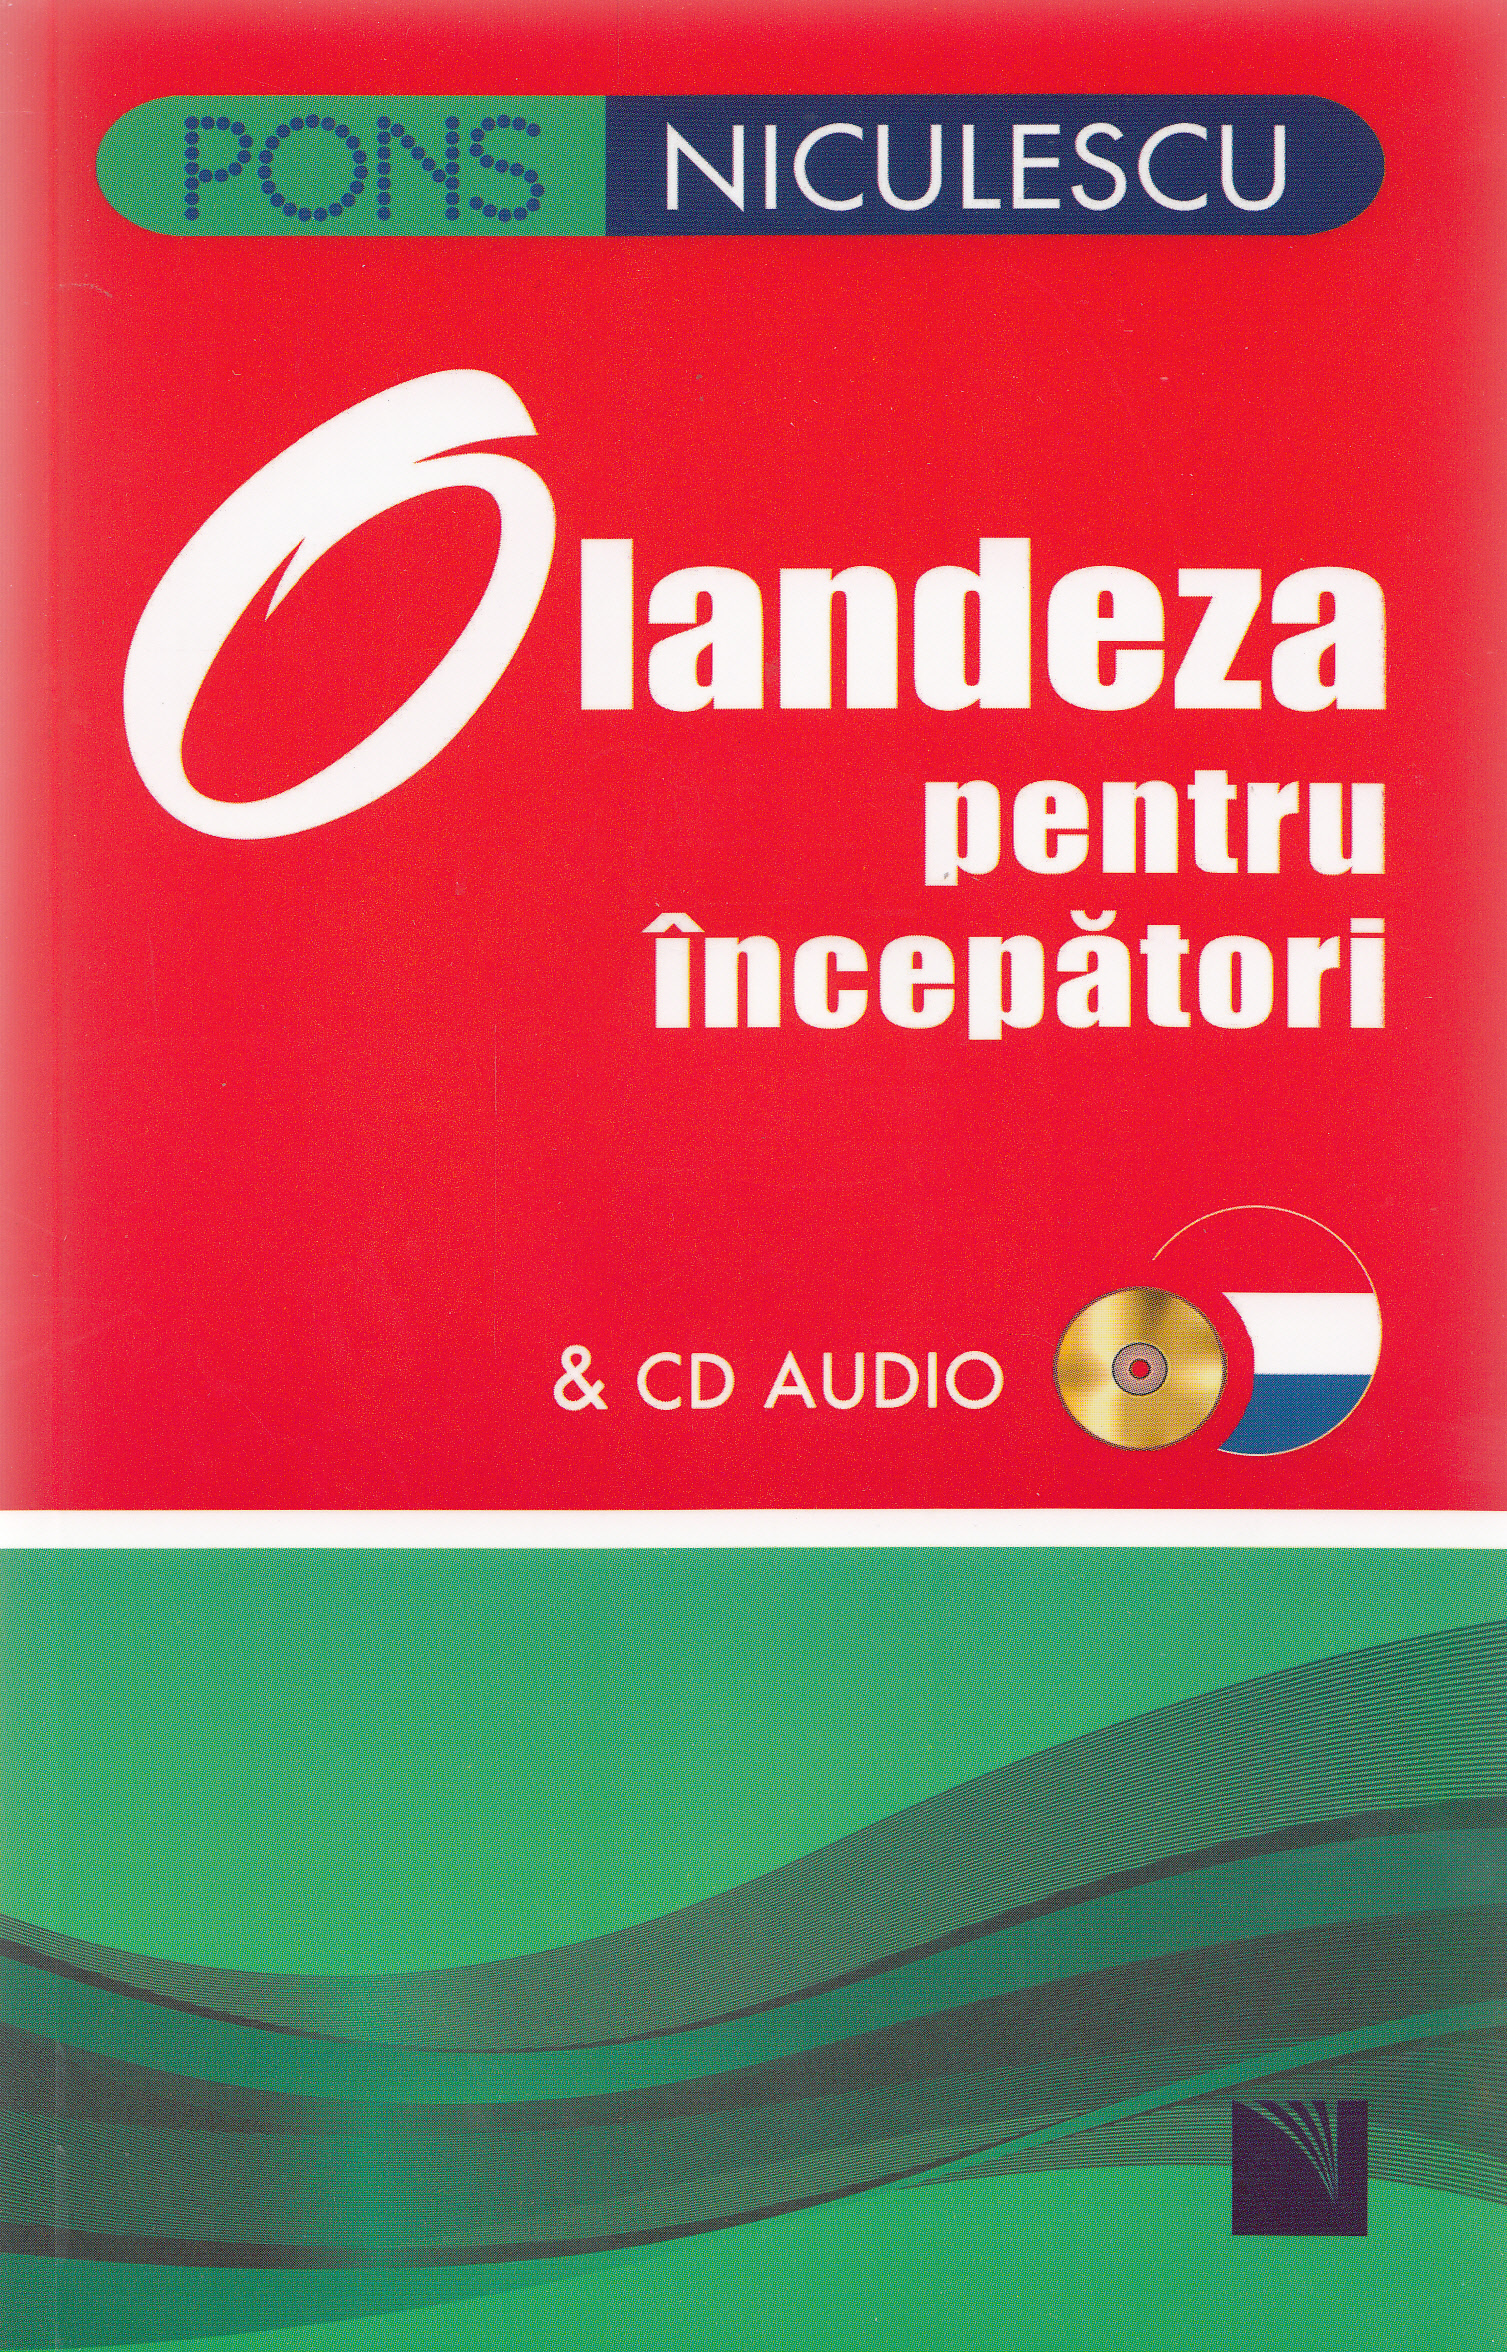 Pons olandeza pentru incepatori cu CD audio